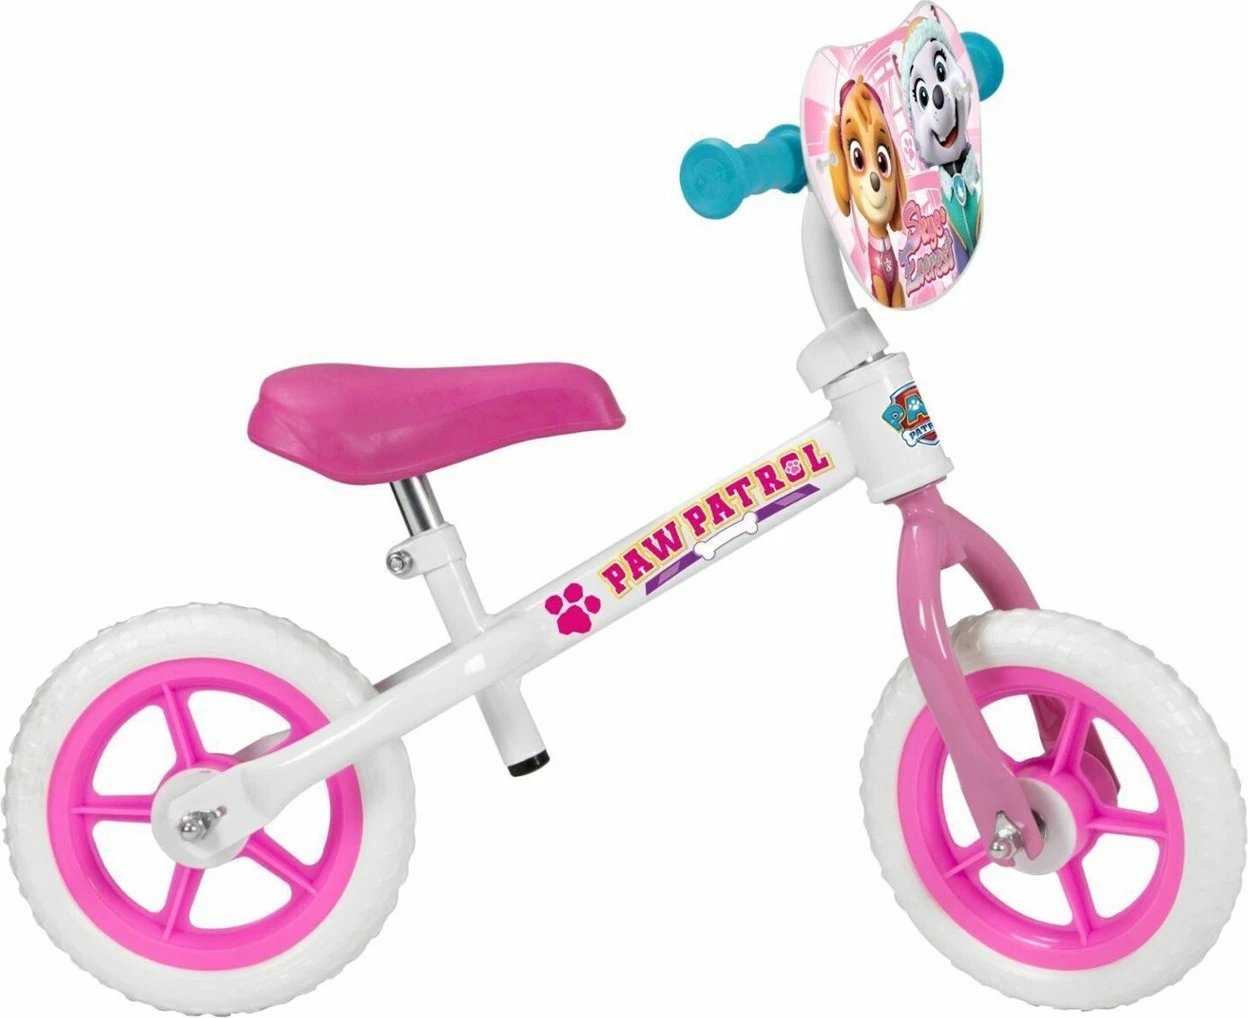 Biçikletë e ekuilibrit për fëmijë Toimsa TOI141, 10", e bardhë/rozë